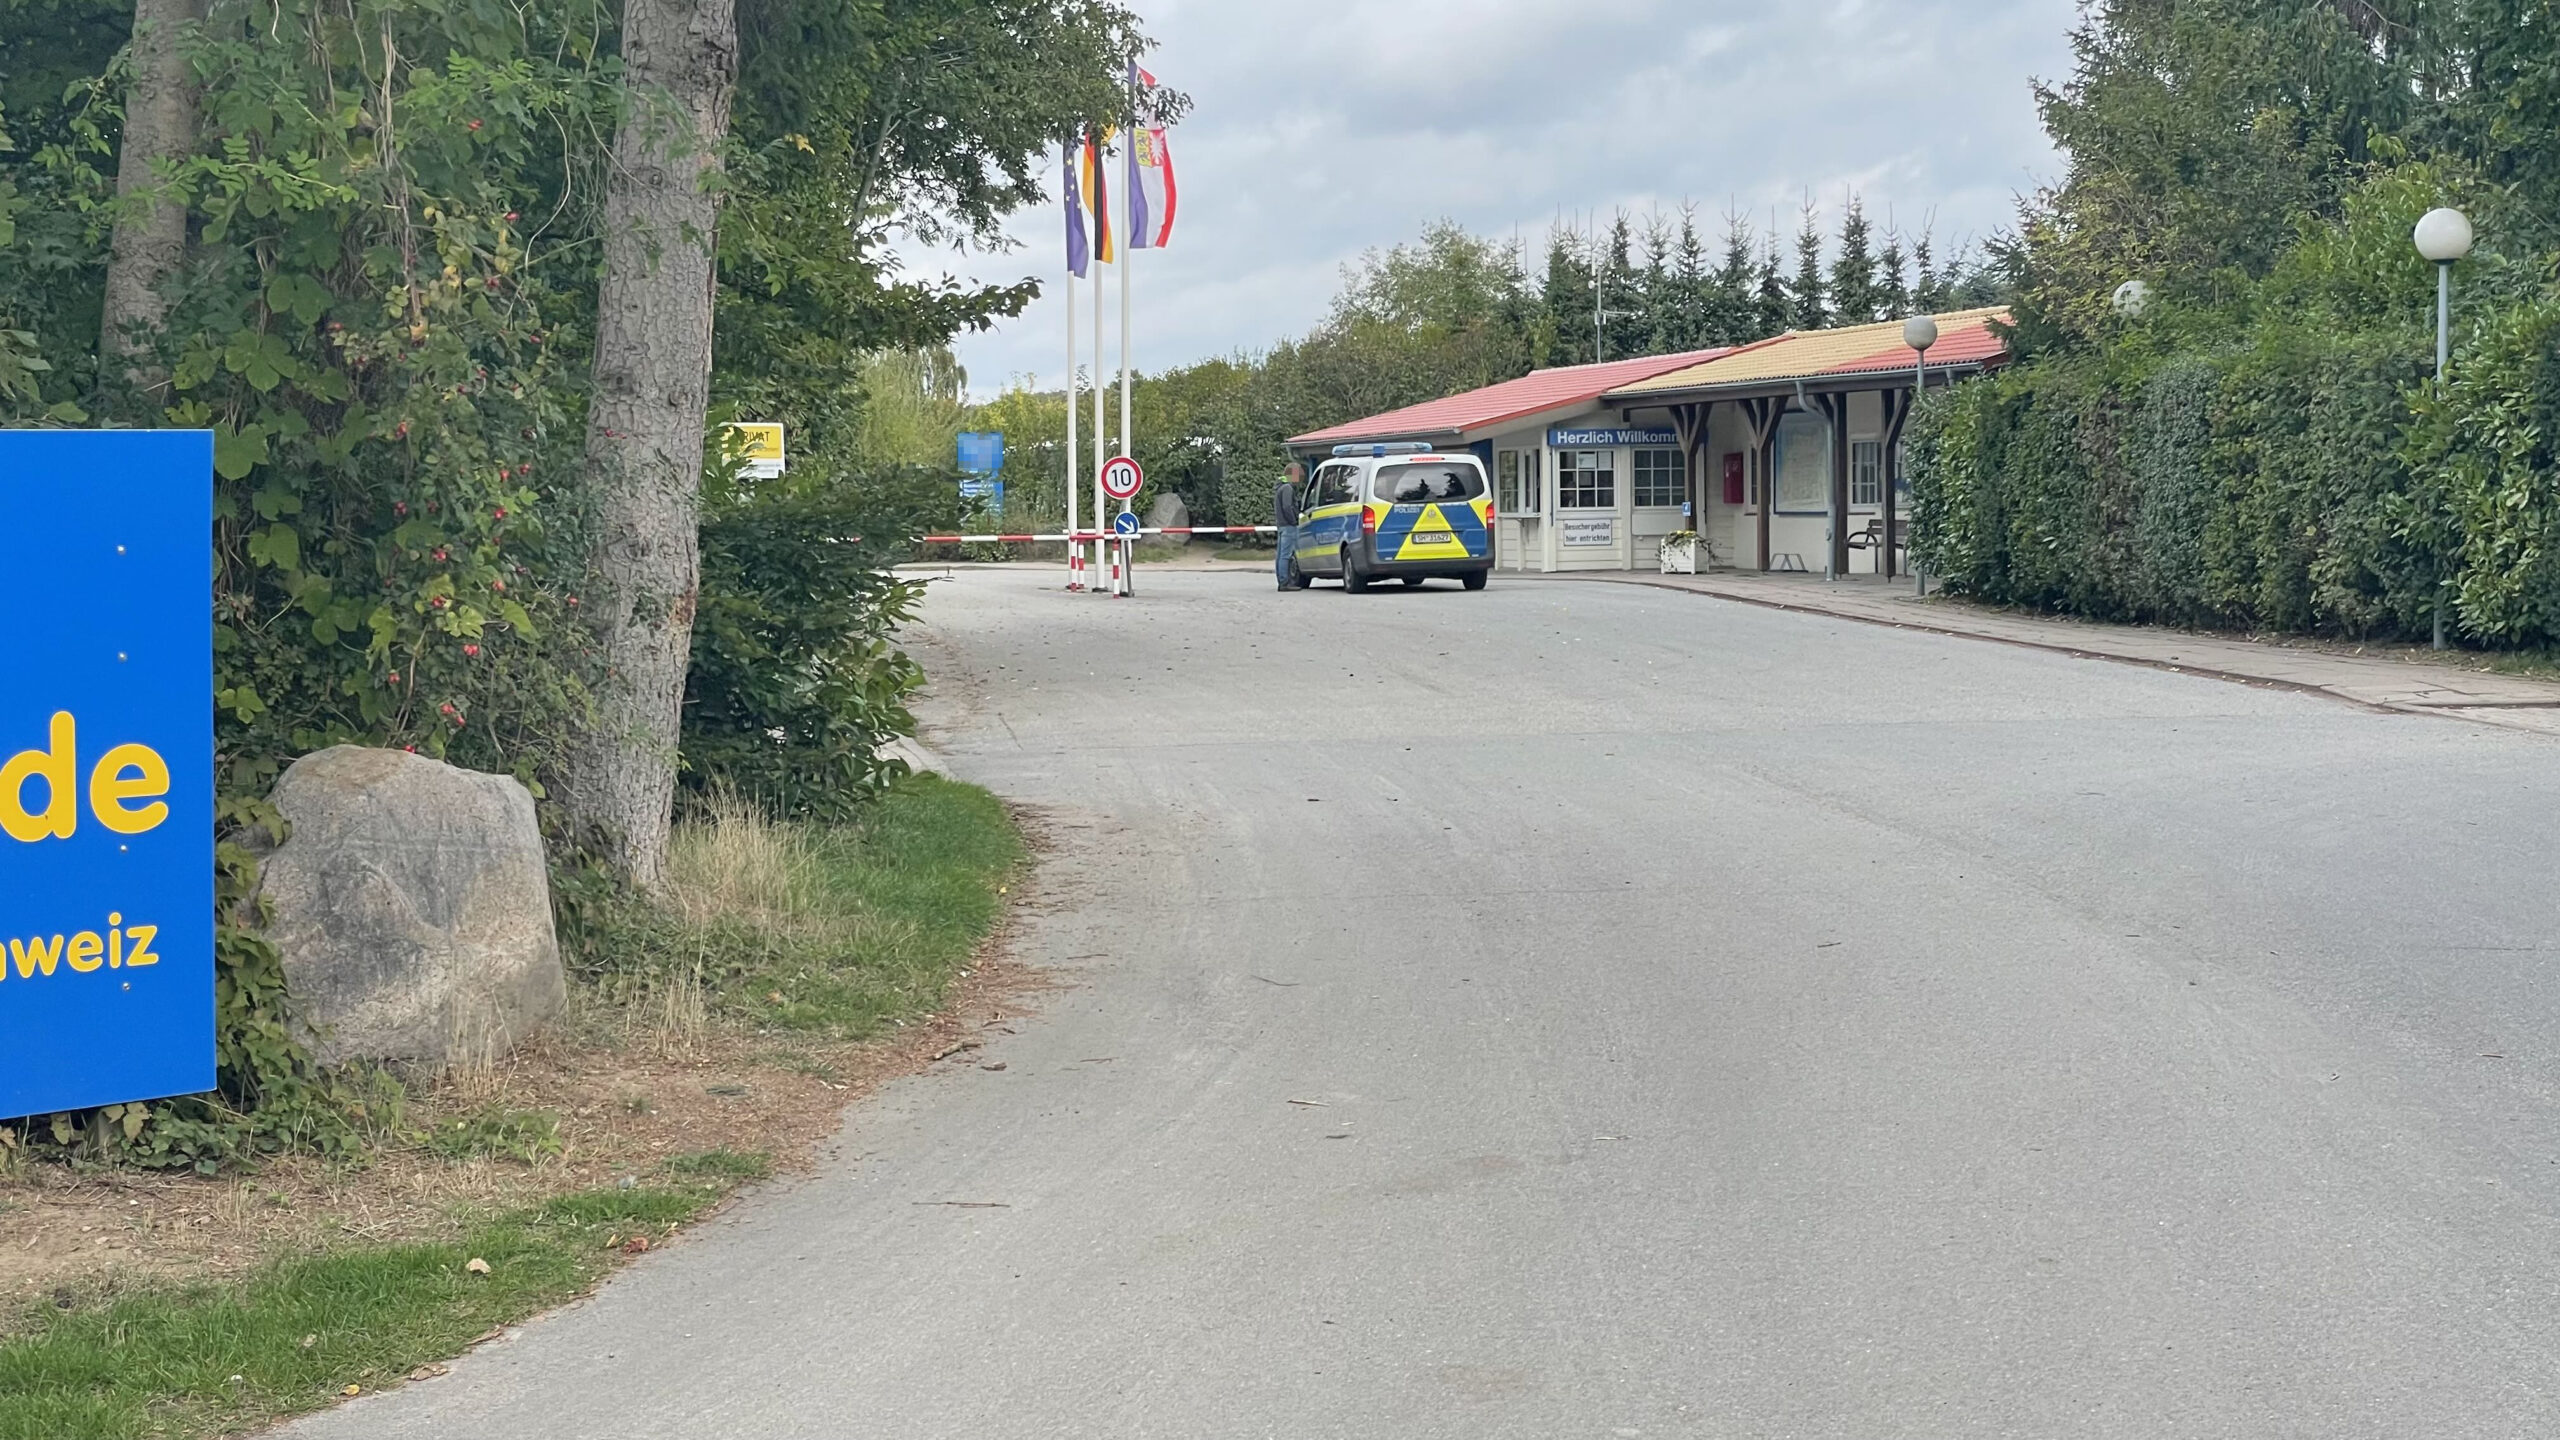 Auf einem Campingplatz in Bösdorf (Kreis Plön) wurde ein sechsjähriger Junge getötet.